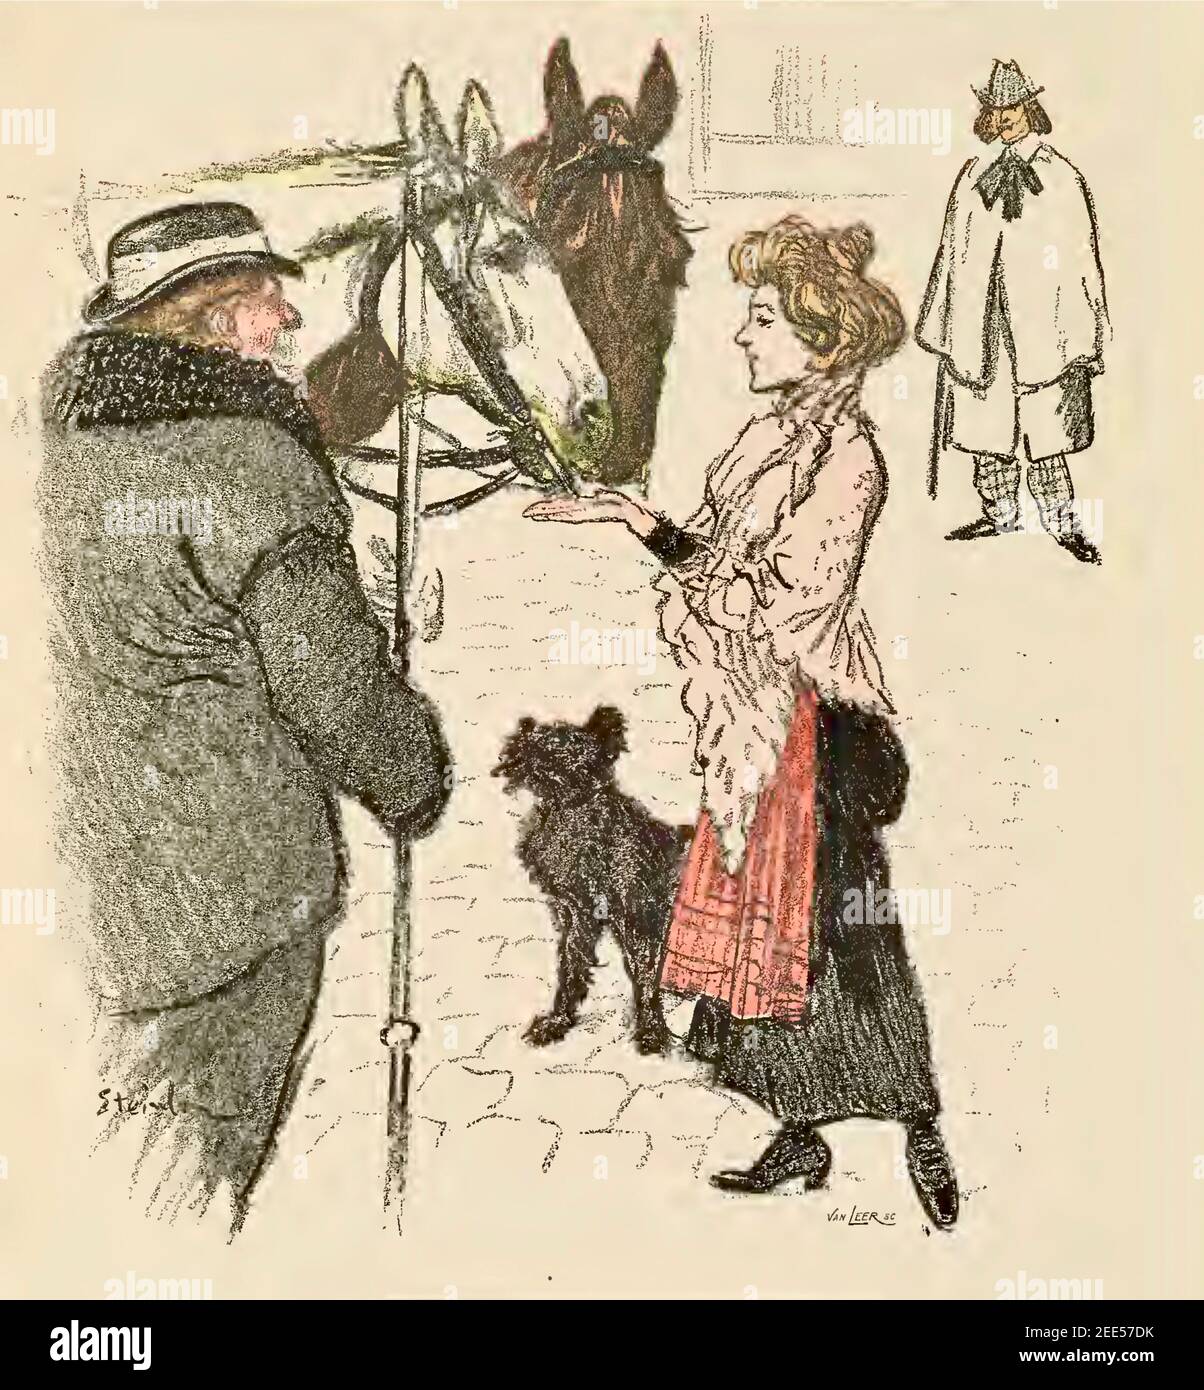 Une femme nourrit une quantité de sucre à un cheval tandis que le cavalier et un autre homme regardent. Theophile Steinlen a-t-il droit au morceau de sucre ou d'innocence ? Banque D'Images